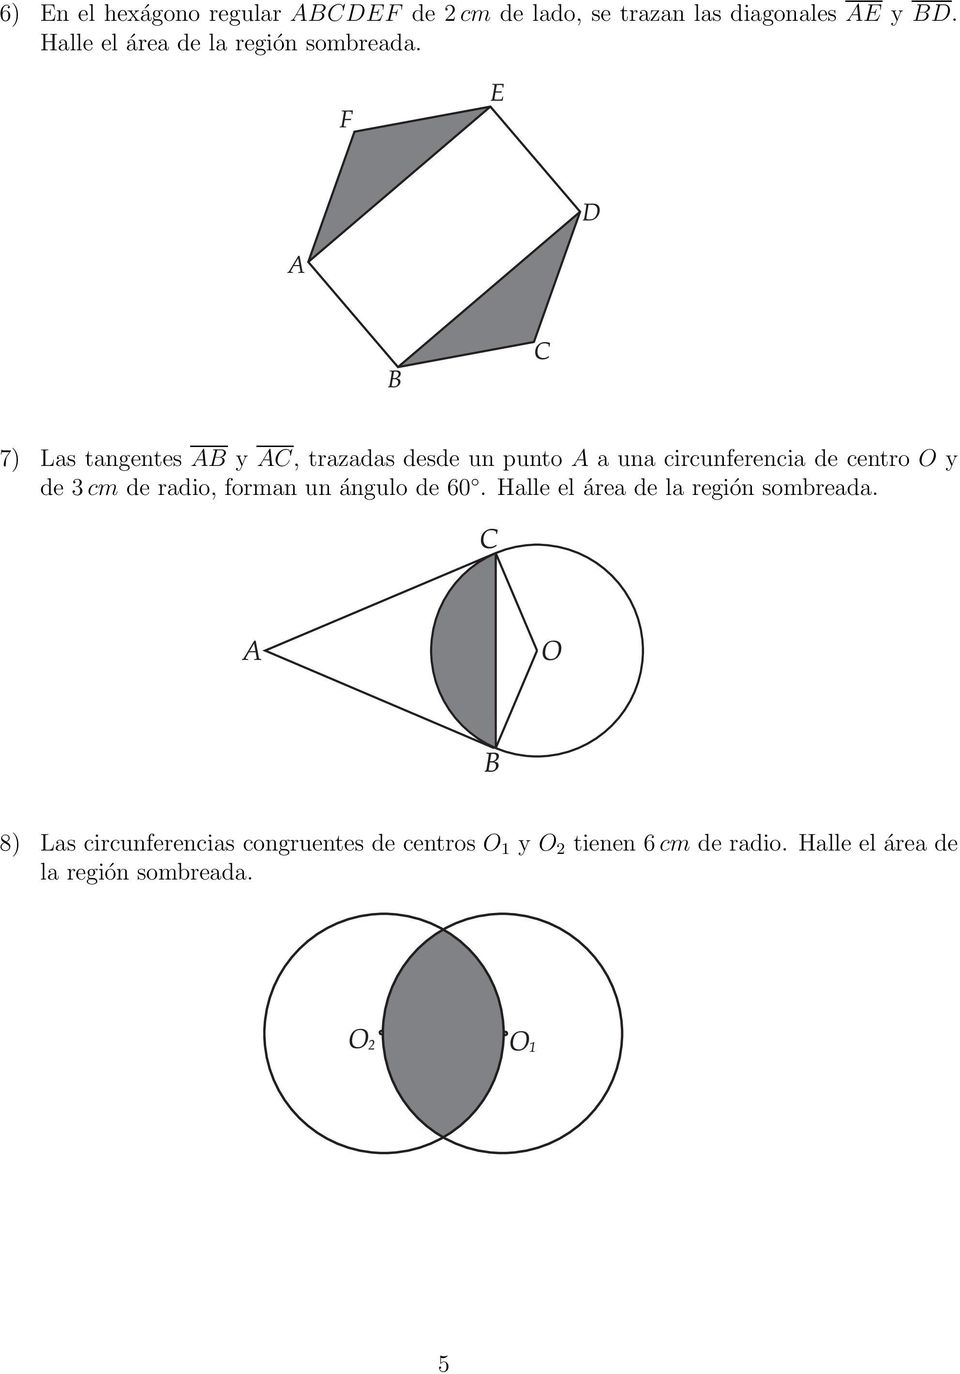 7) Las tangentes AB y AC, trazadas desde un punto A a una circunferencia de centro O y de 3 cm de